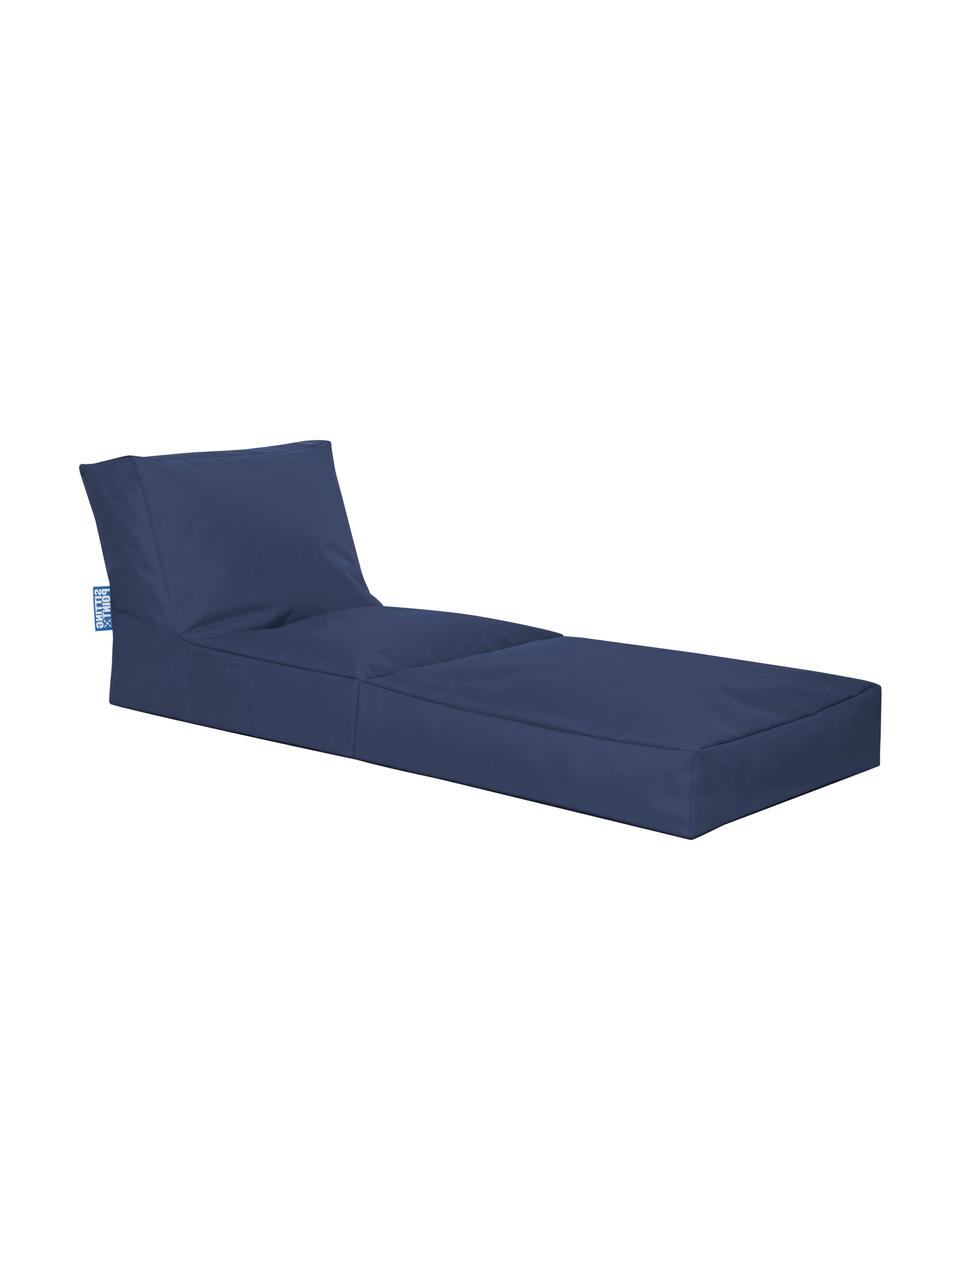 Fotel ogrodowy z funkcją leżenia Pop Up, Tapicerka: 100% poliester Wewnątrz p, Jeansowy niebieski, S 70 x G 90 cm